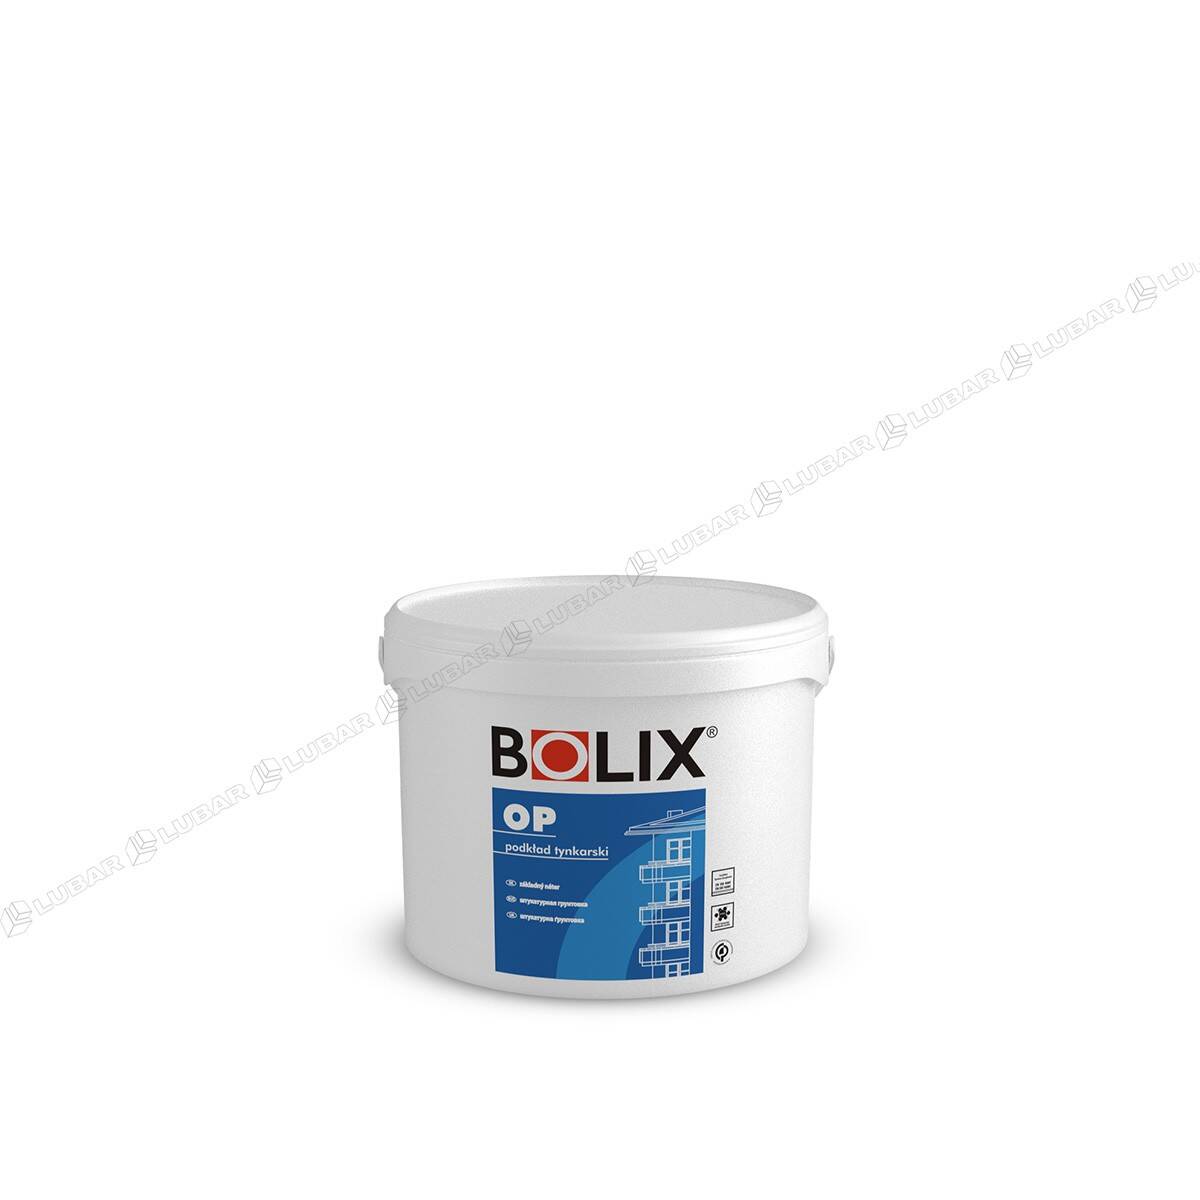 BOLIX OP Podkład tynkarski pod cienkowarstwowe tynki mineralne, akrylowe i dekoracyjne 10kg